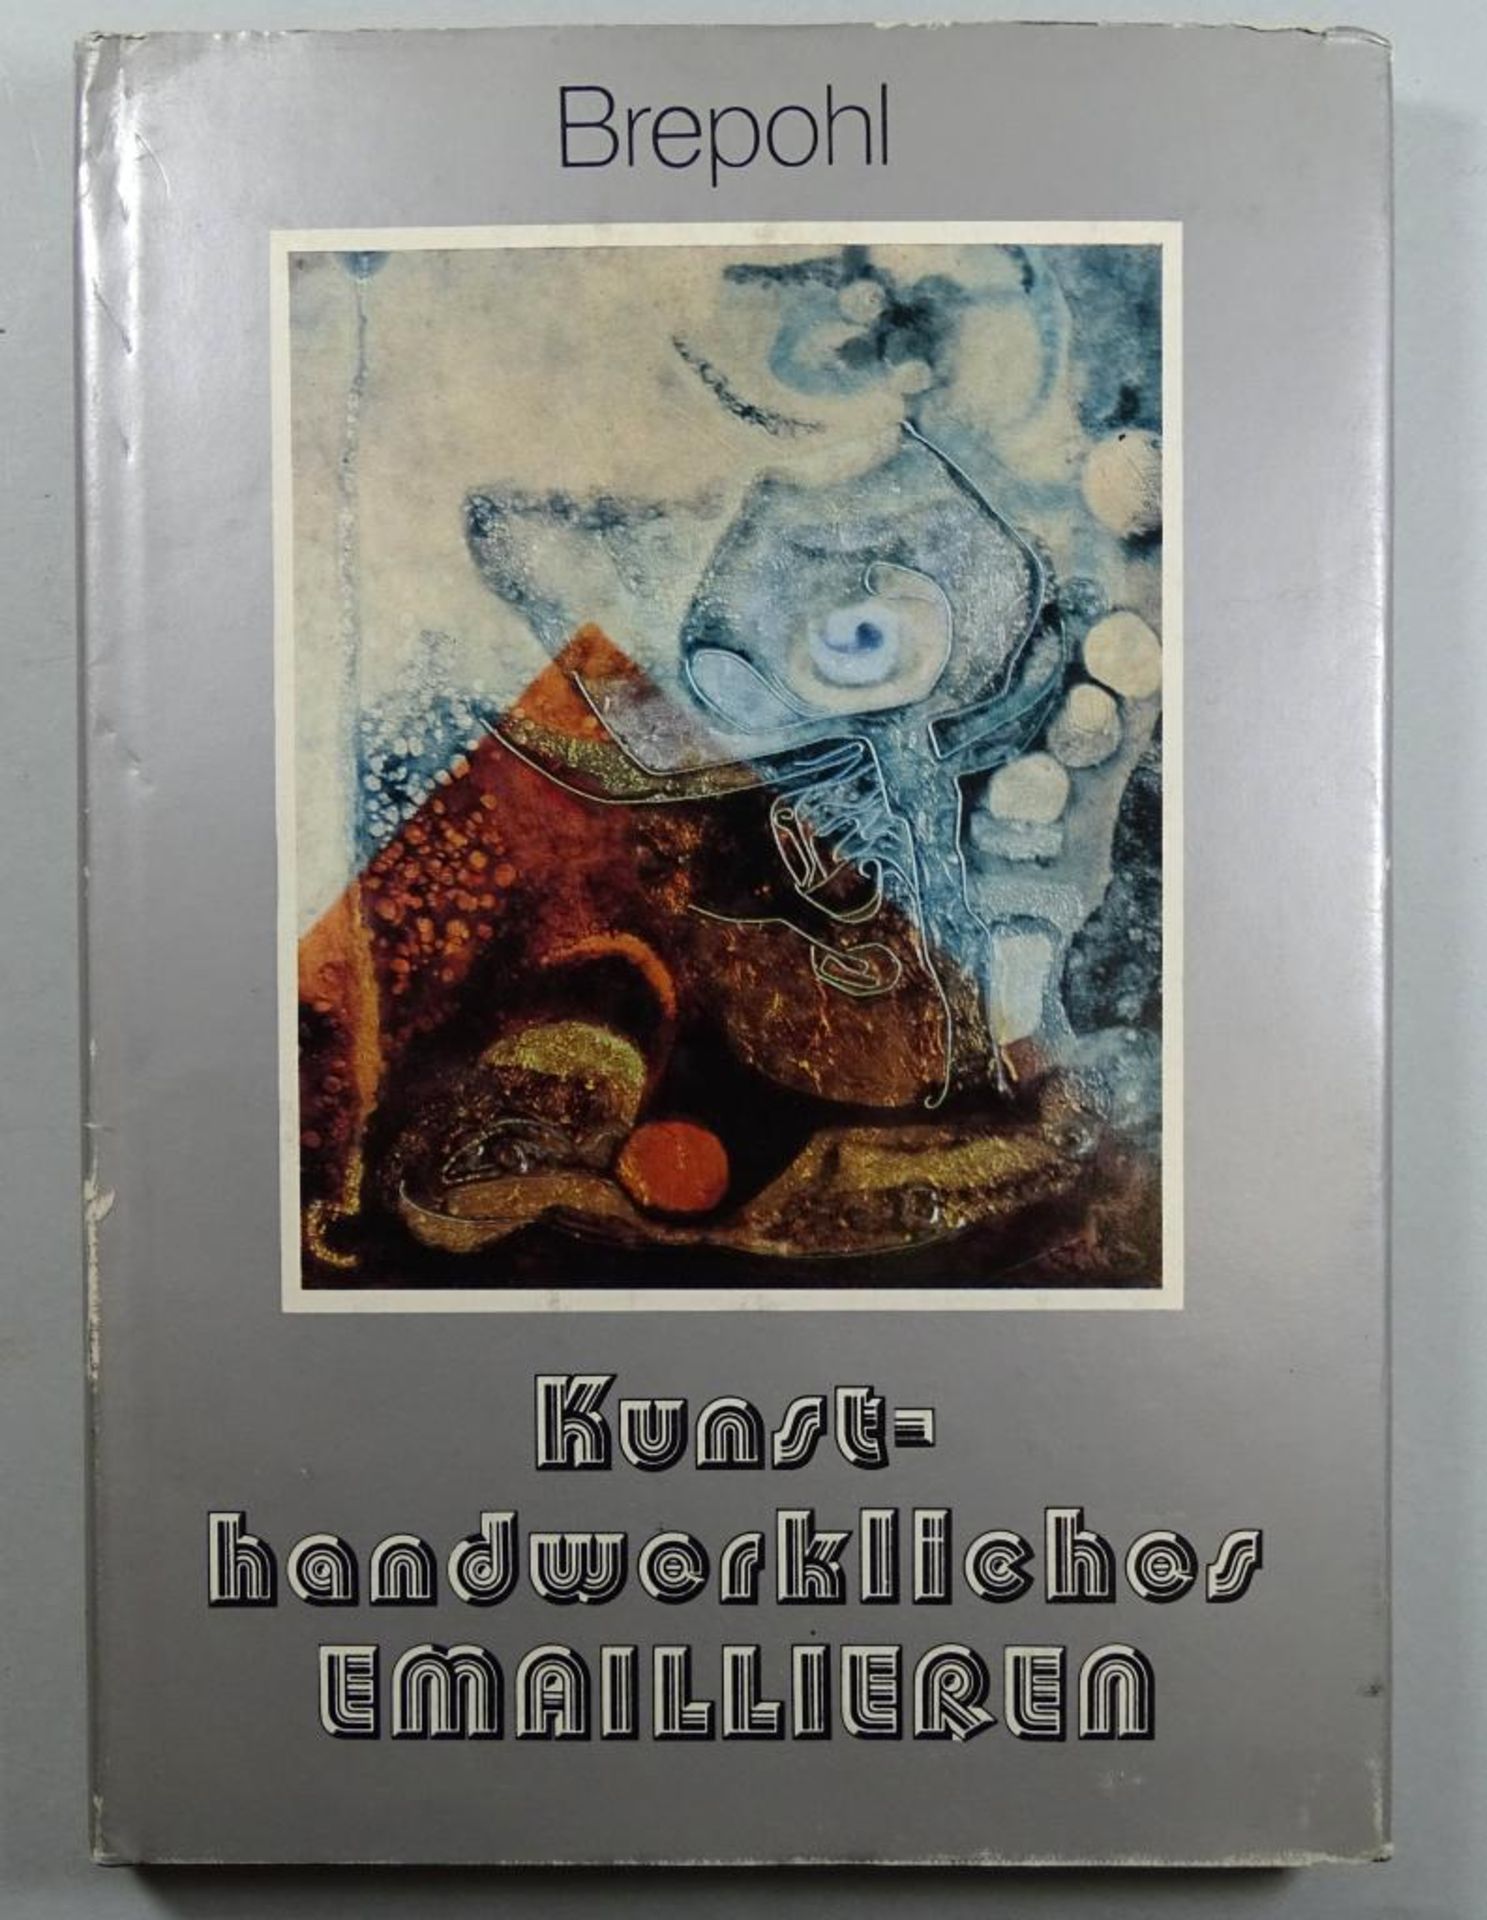 "Kunsthandwerkliches Emaillieren", Brepohl, mit 227 Bildern, 1979